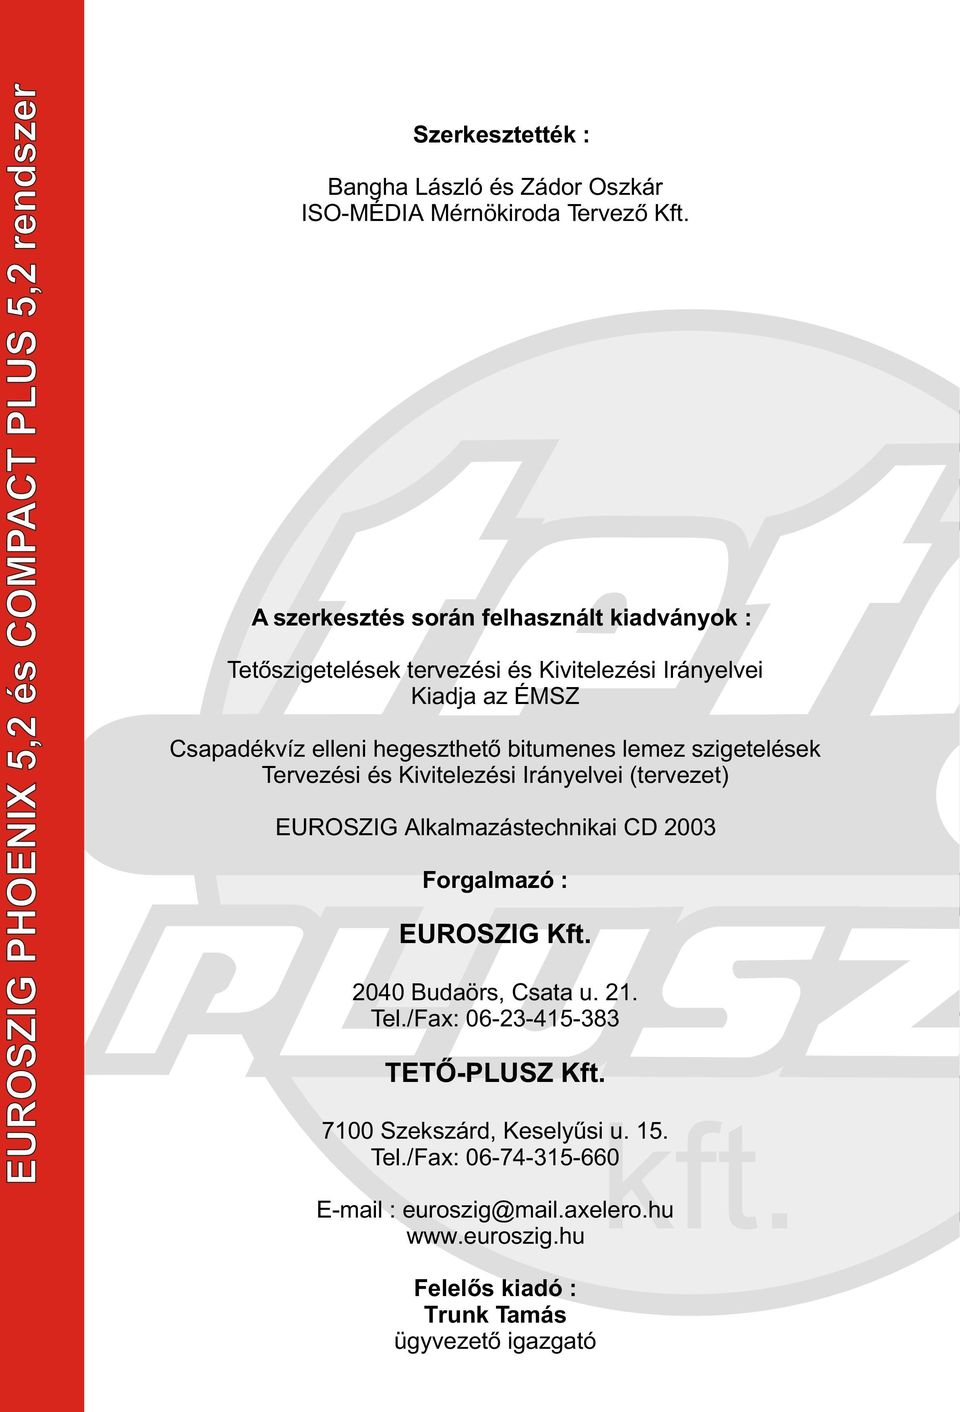 lemez szigetelések Tervezési és Kivitelezési Irányelvei (tervezet) EUROSZIG Alkalmazástechnikai CD 2003 Forgalmazó : EUROSZIG Kft. 2040 Budaörs, Csata u. 21.